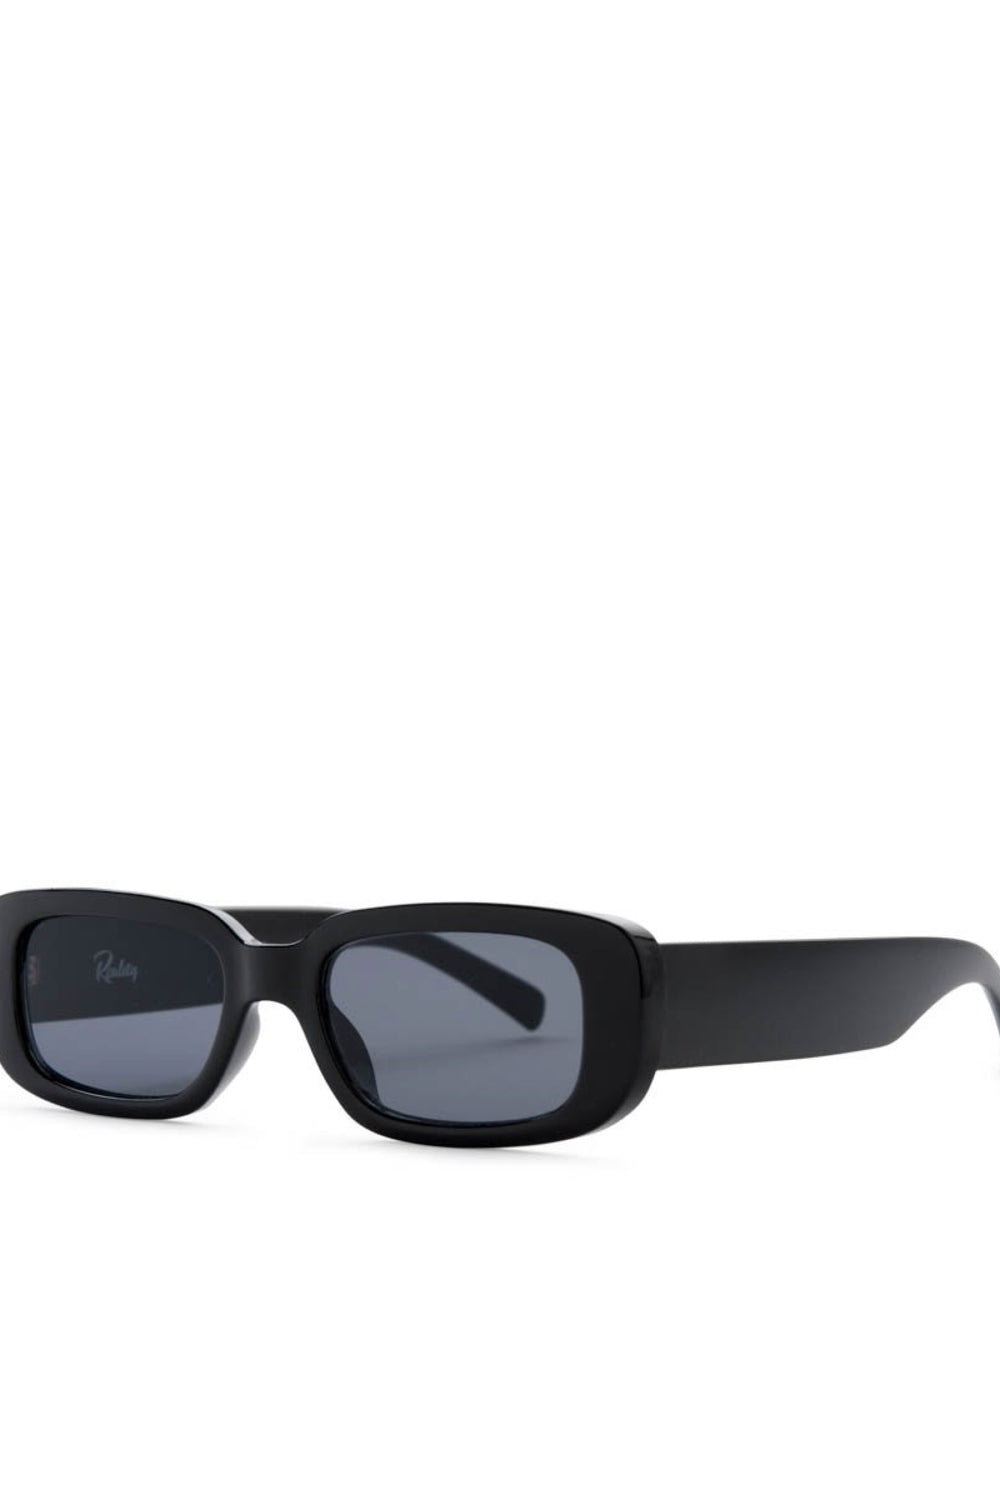 Jett Black Polarized Xray Sunglasses